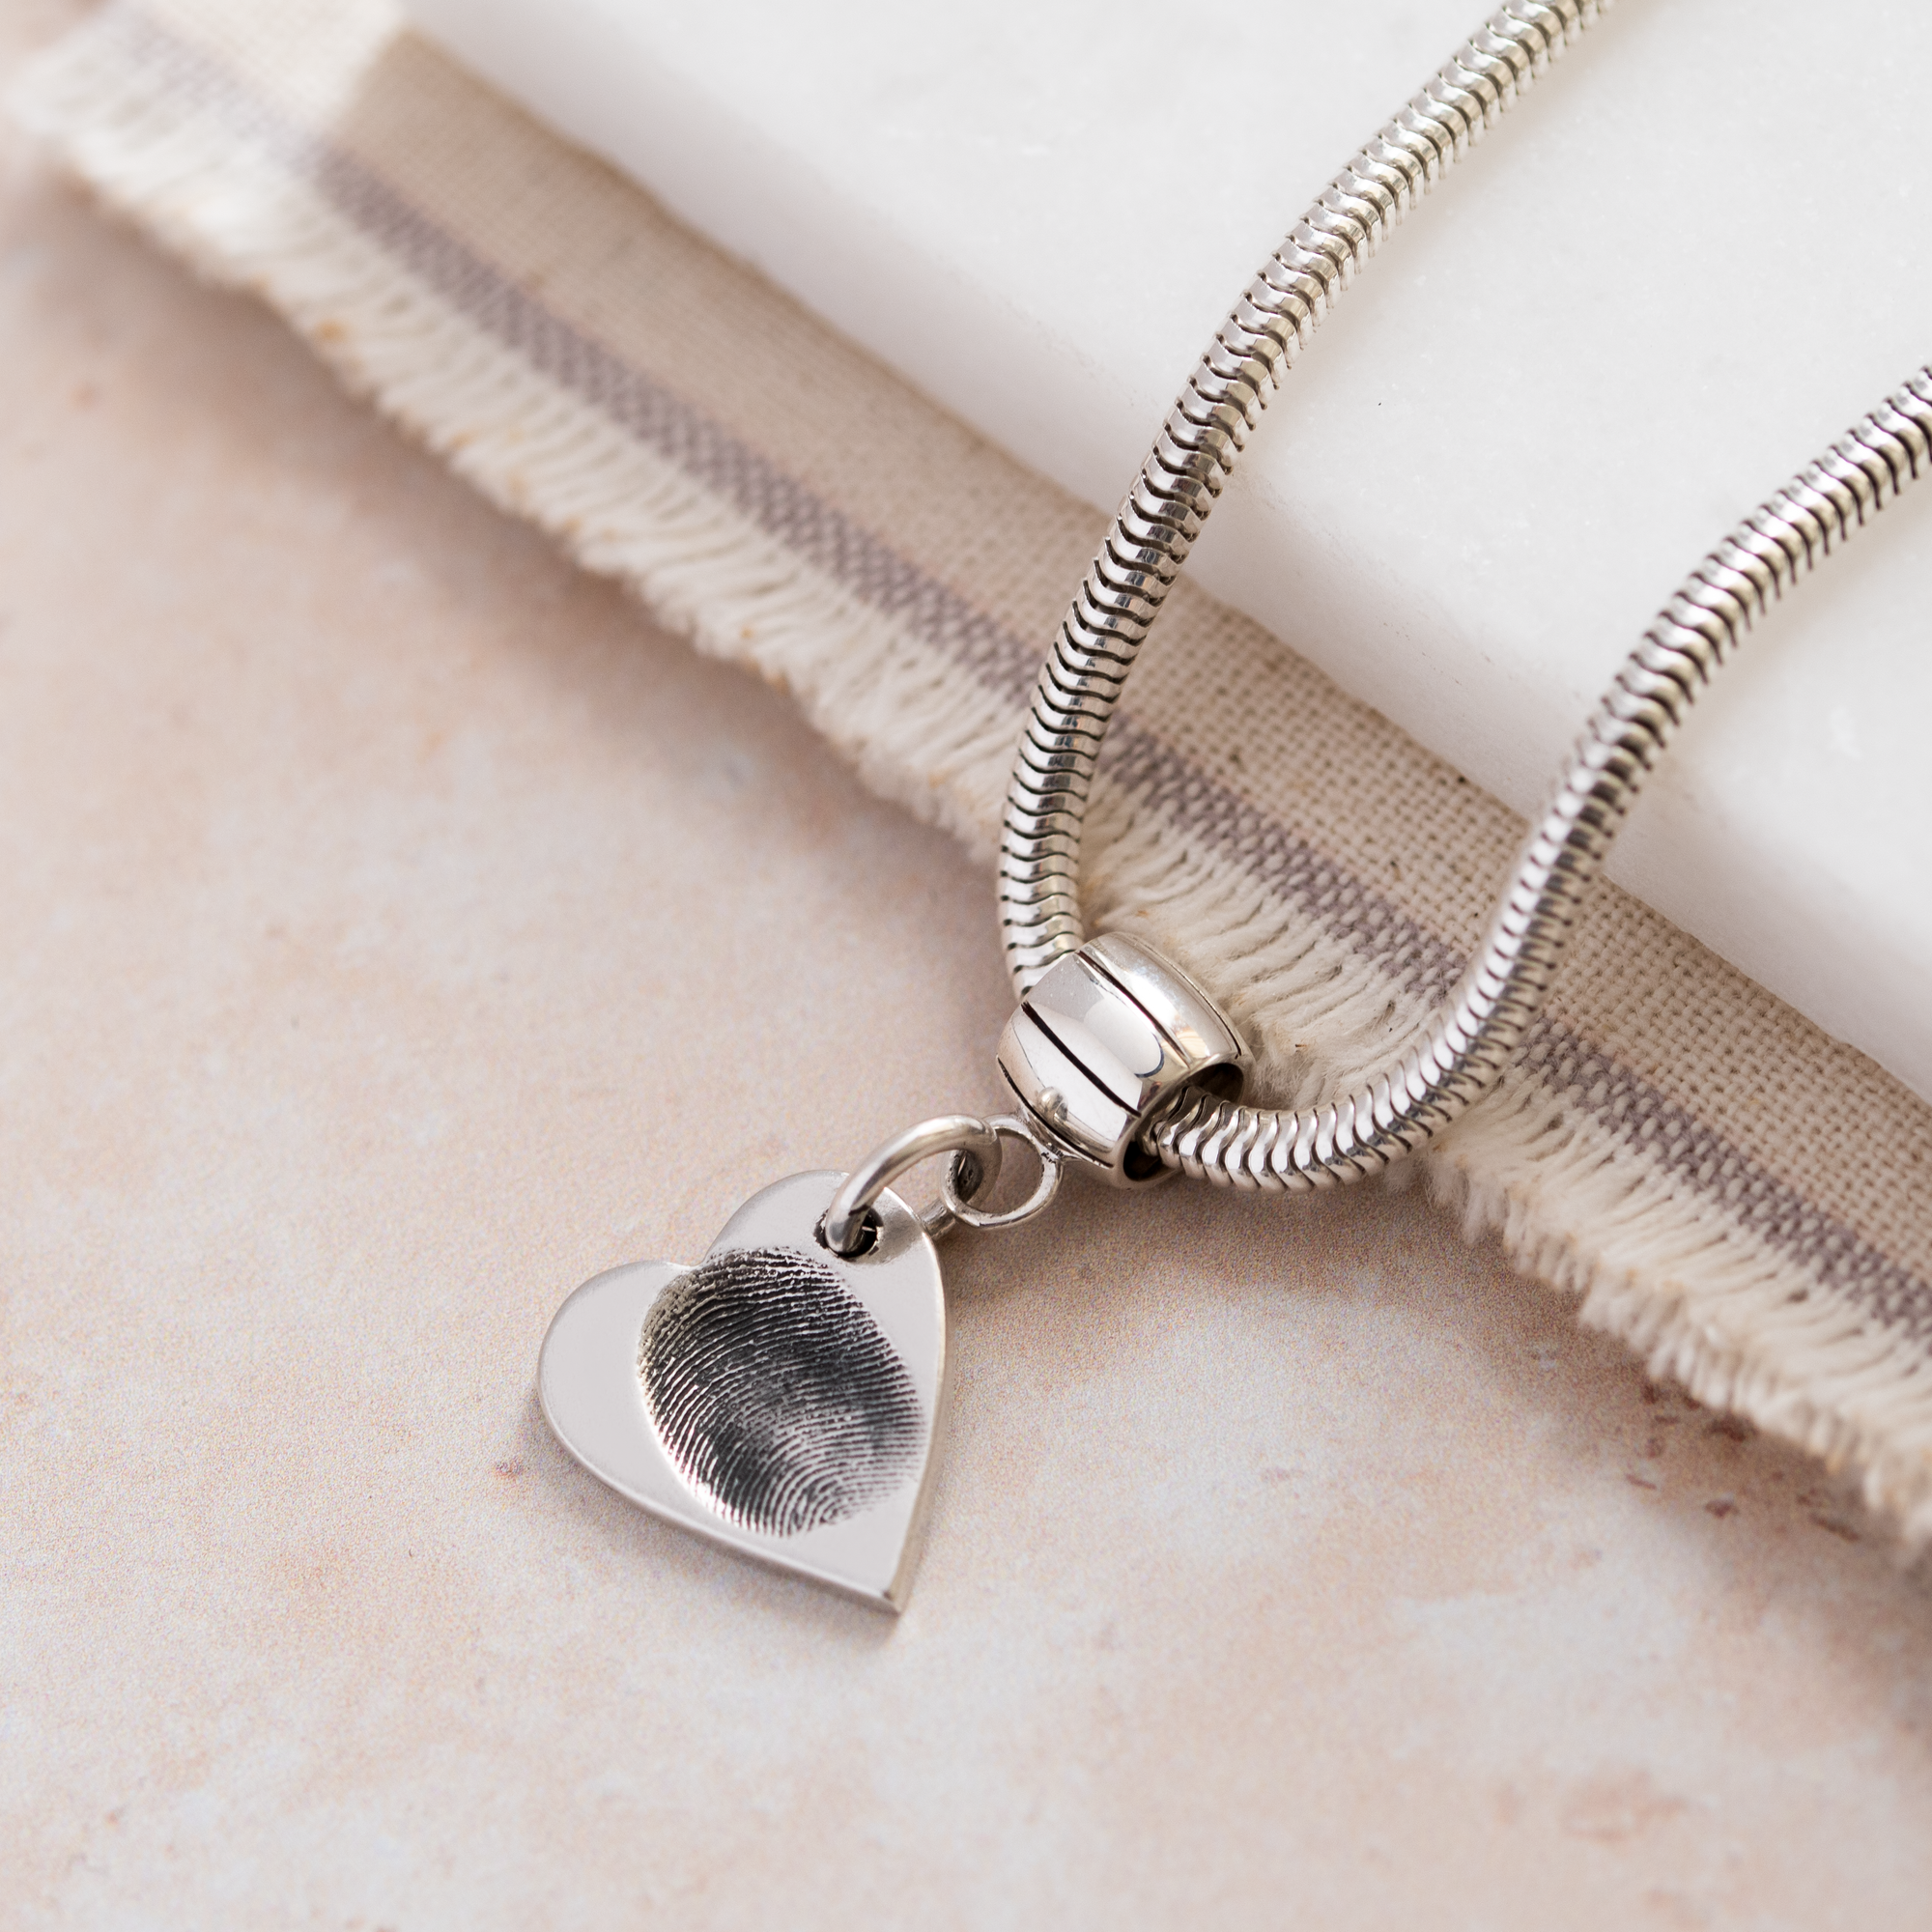 heart shaped fingerprint pendant on snake chain